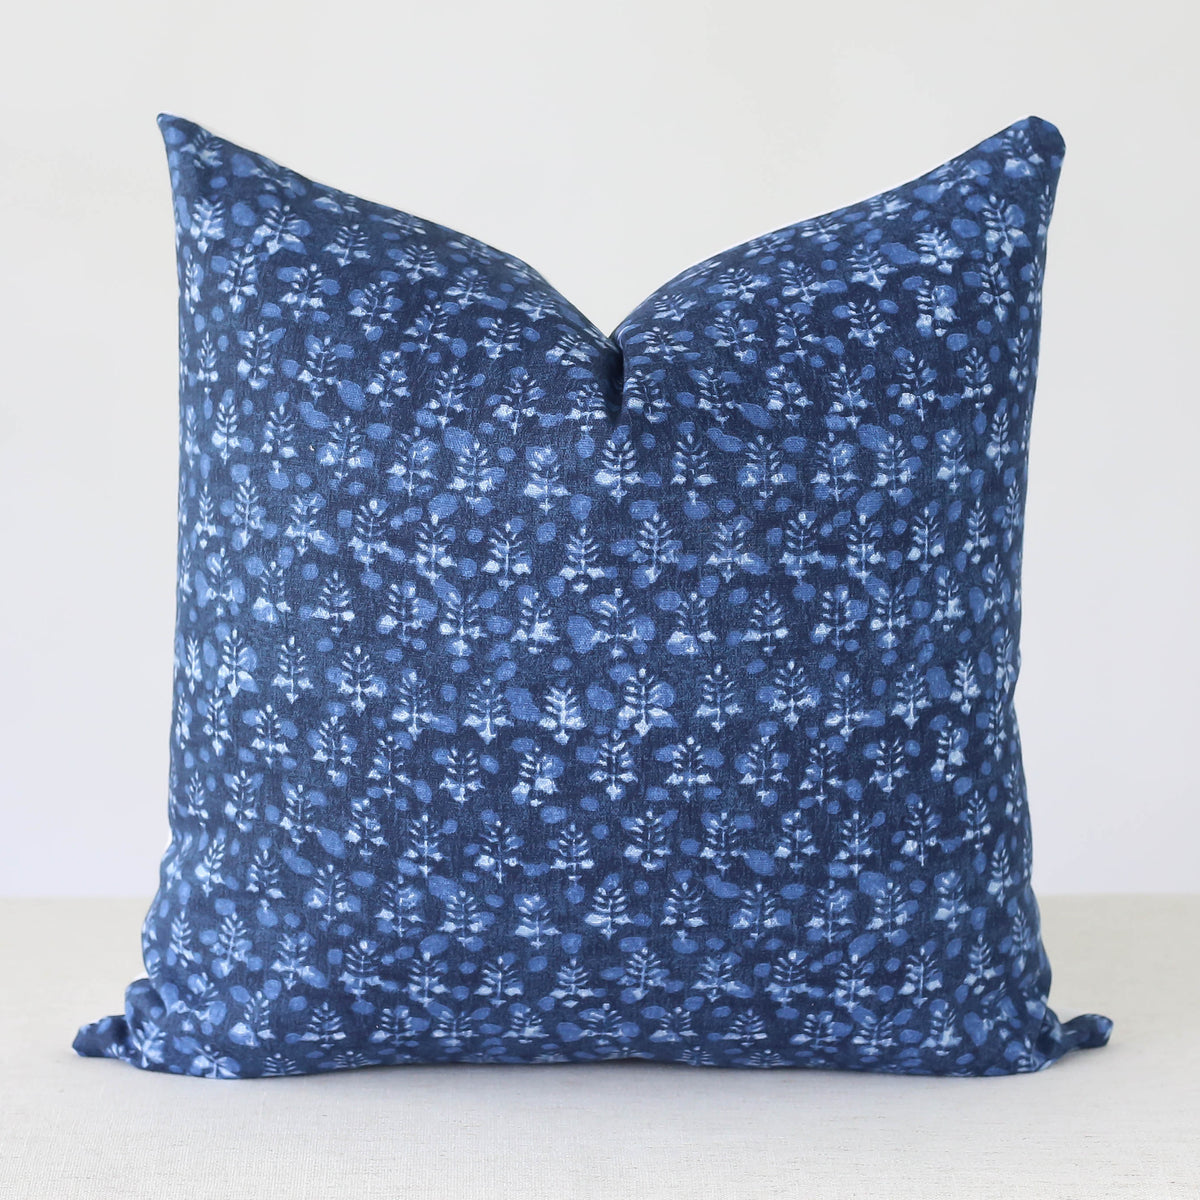 Sierra Handmade Pillow Cover